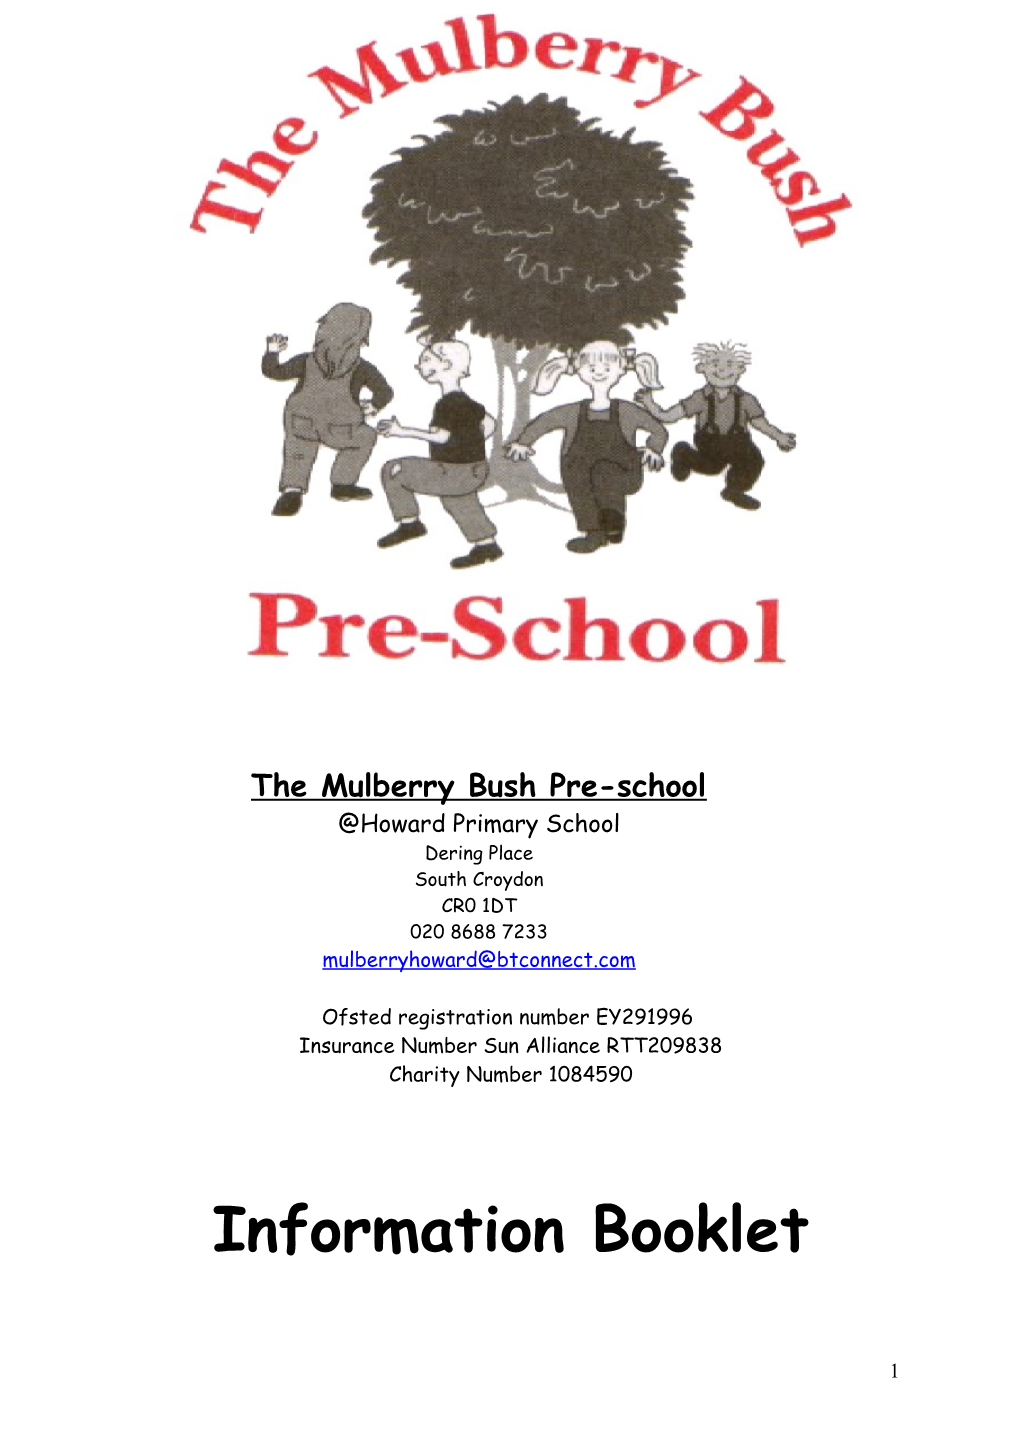 The Mulberry Bush Pre-School